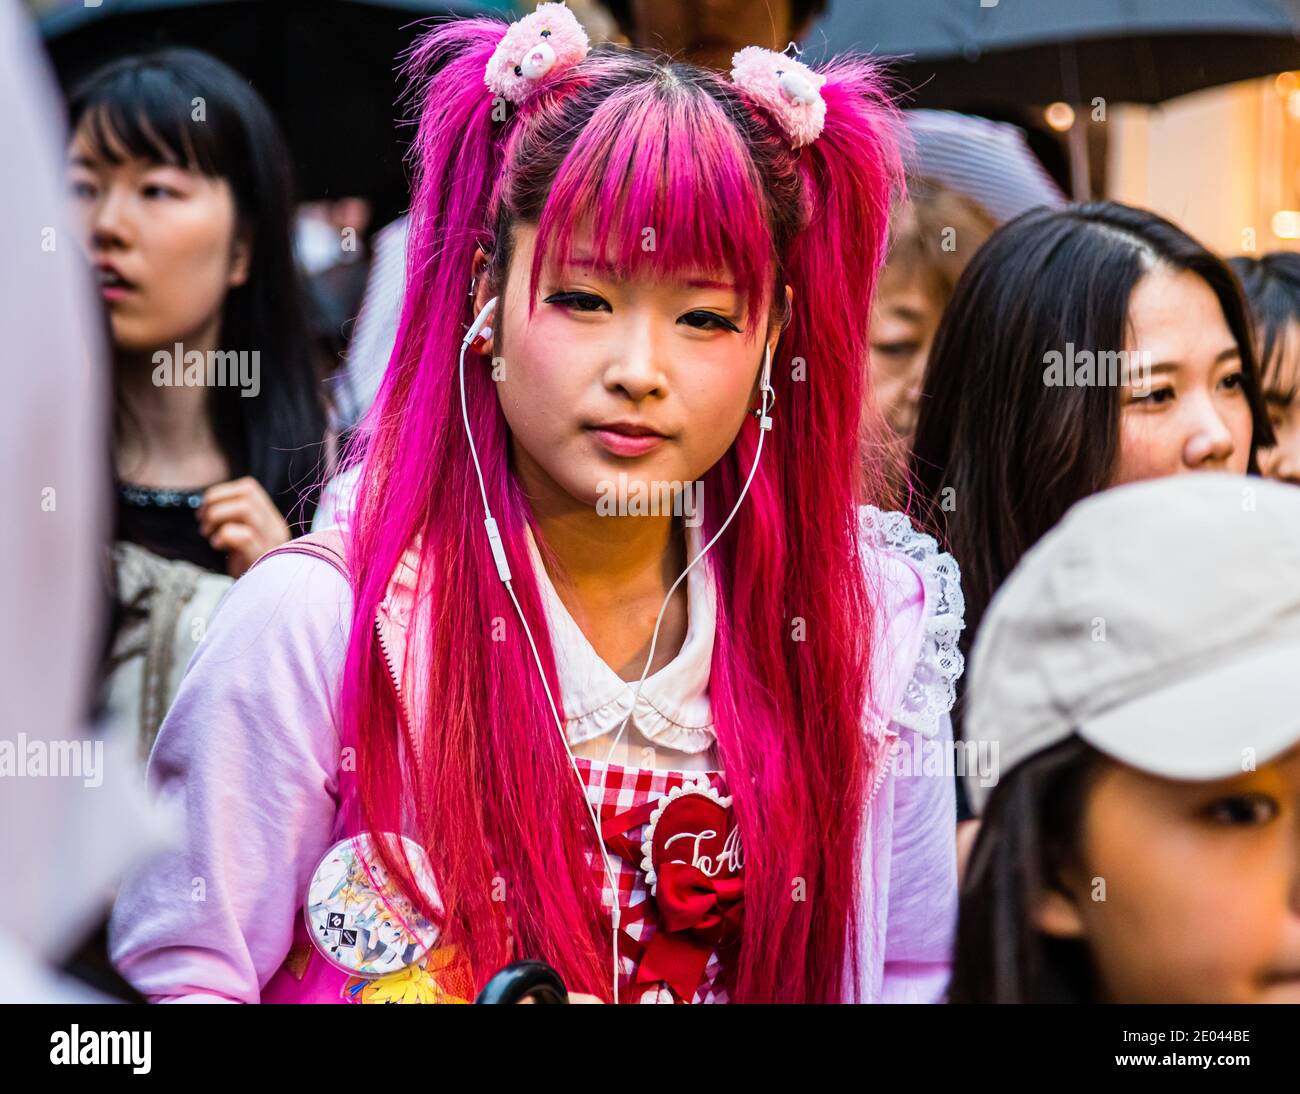 Junge Frau im Kawaii-Look, so süß und mädchenhaft. Street Life in Tokio, Japan Stockfoto